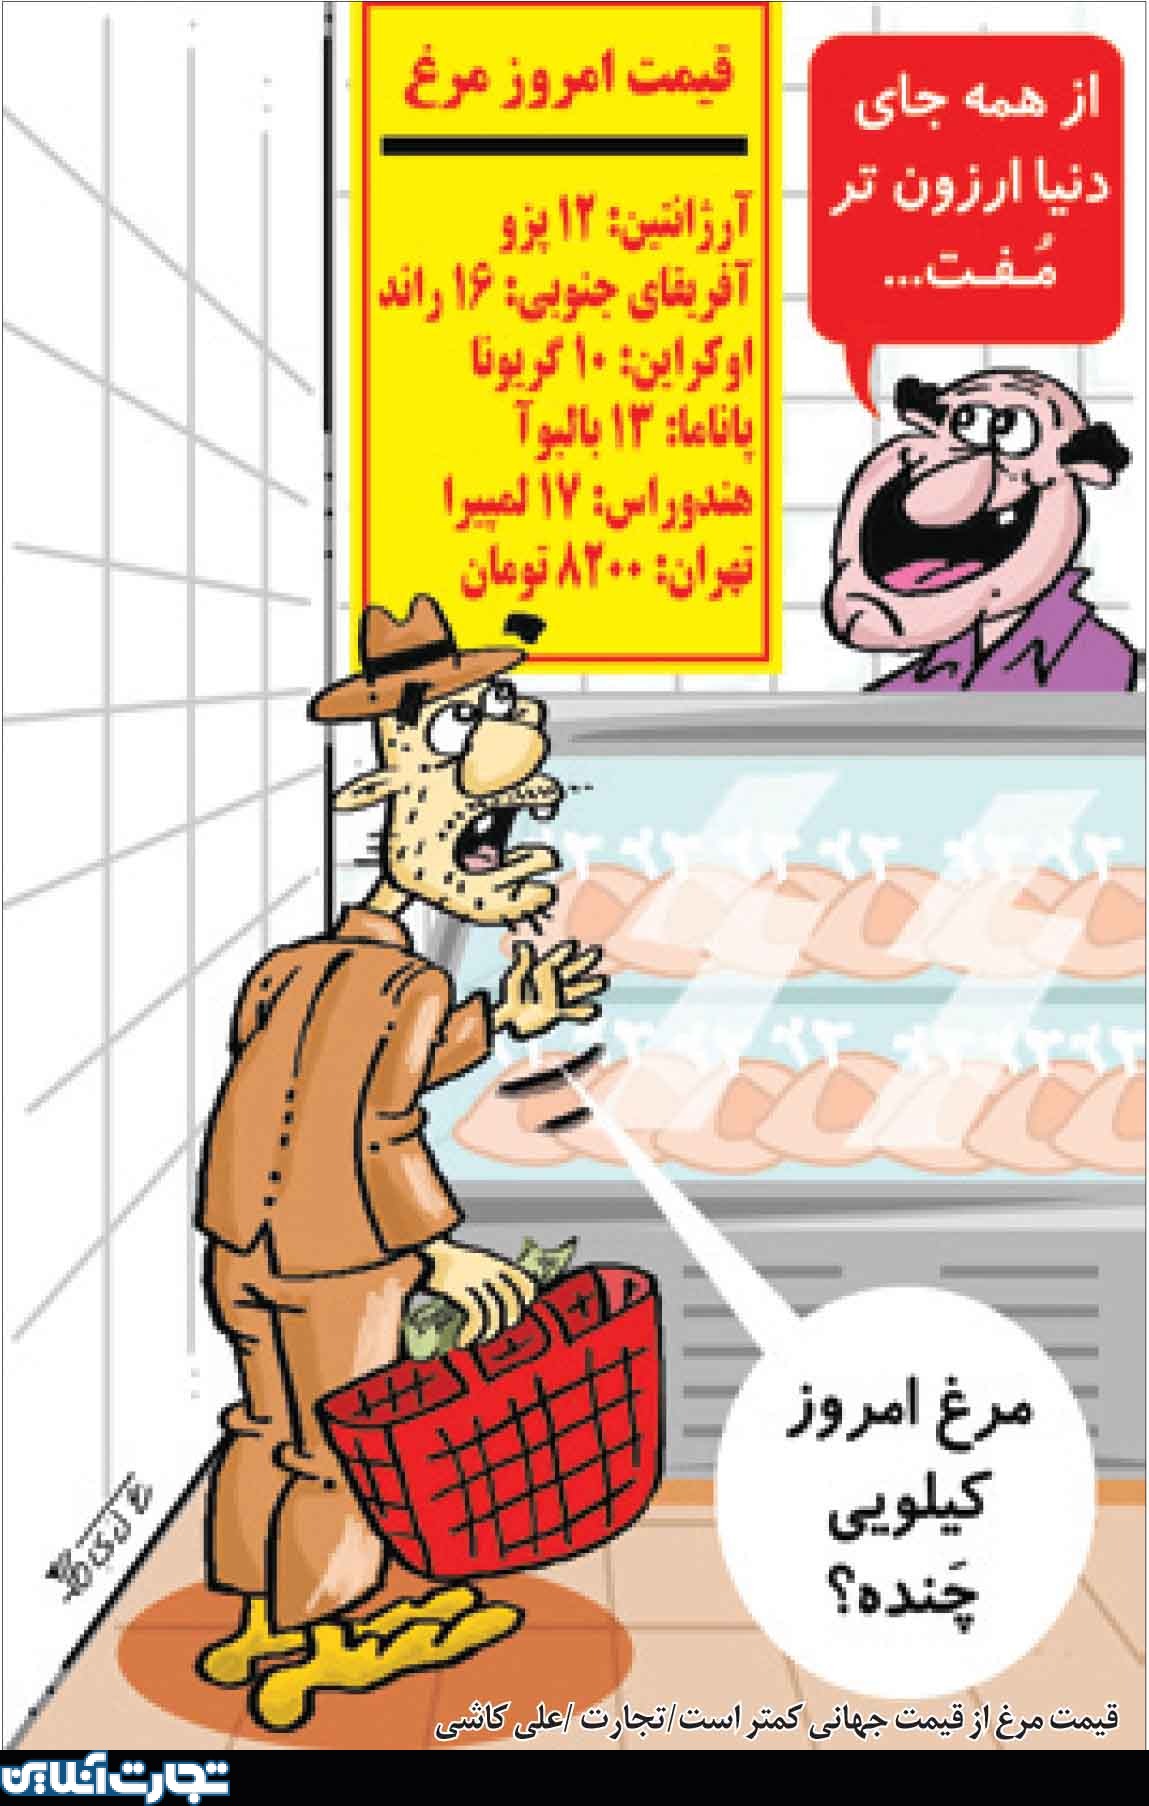 قیمت مرغ در ایران کمتر از قیمت جهانی است!